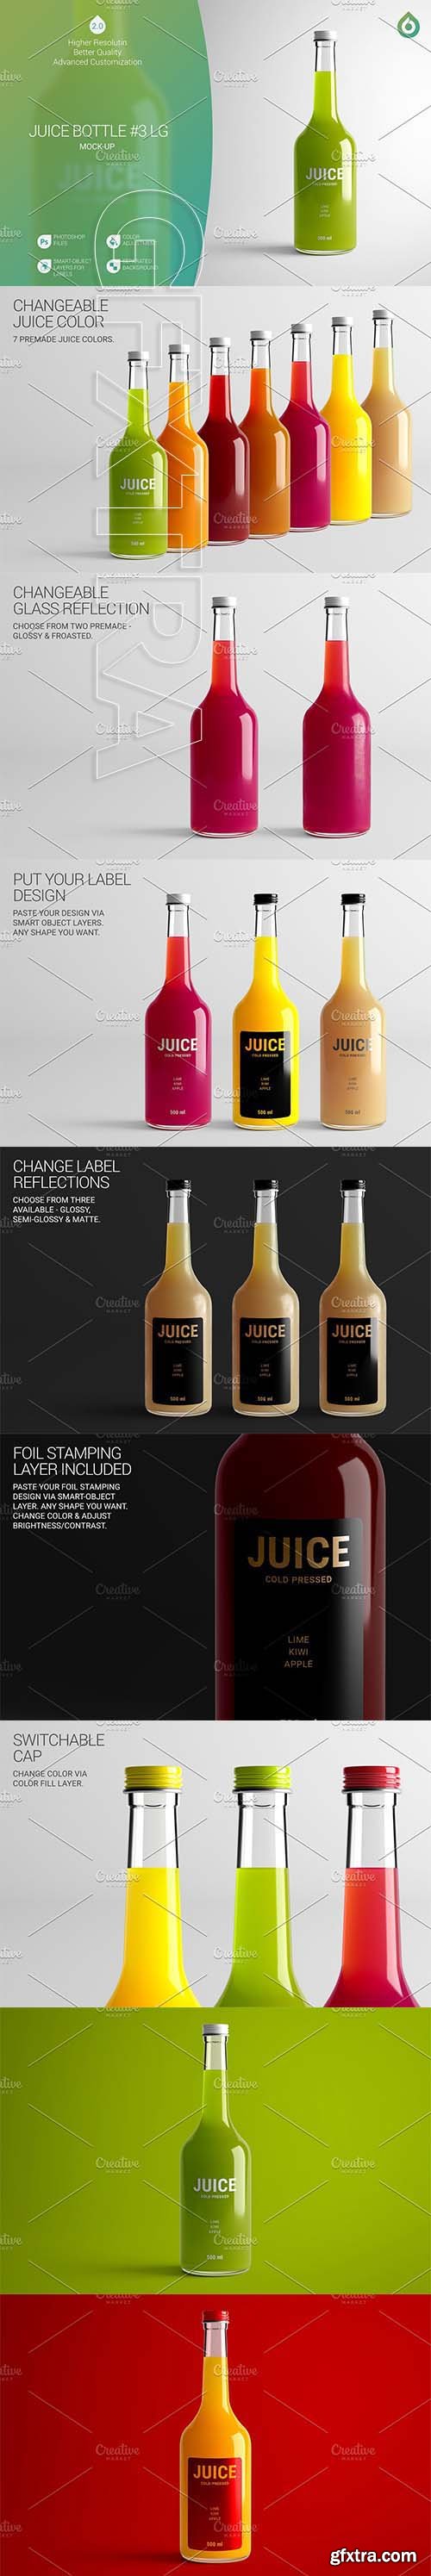 CreativeMarket - Juice Bottle LG Mock-Up #3 [V2.0] 4167104